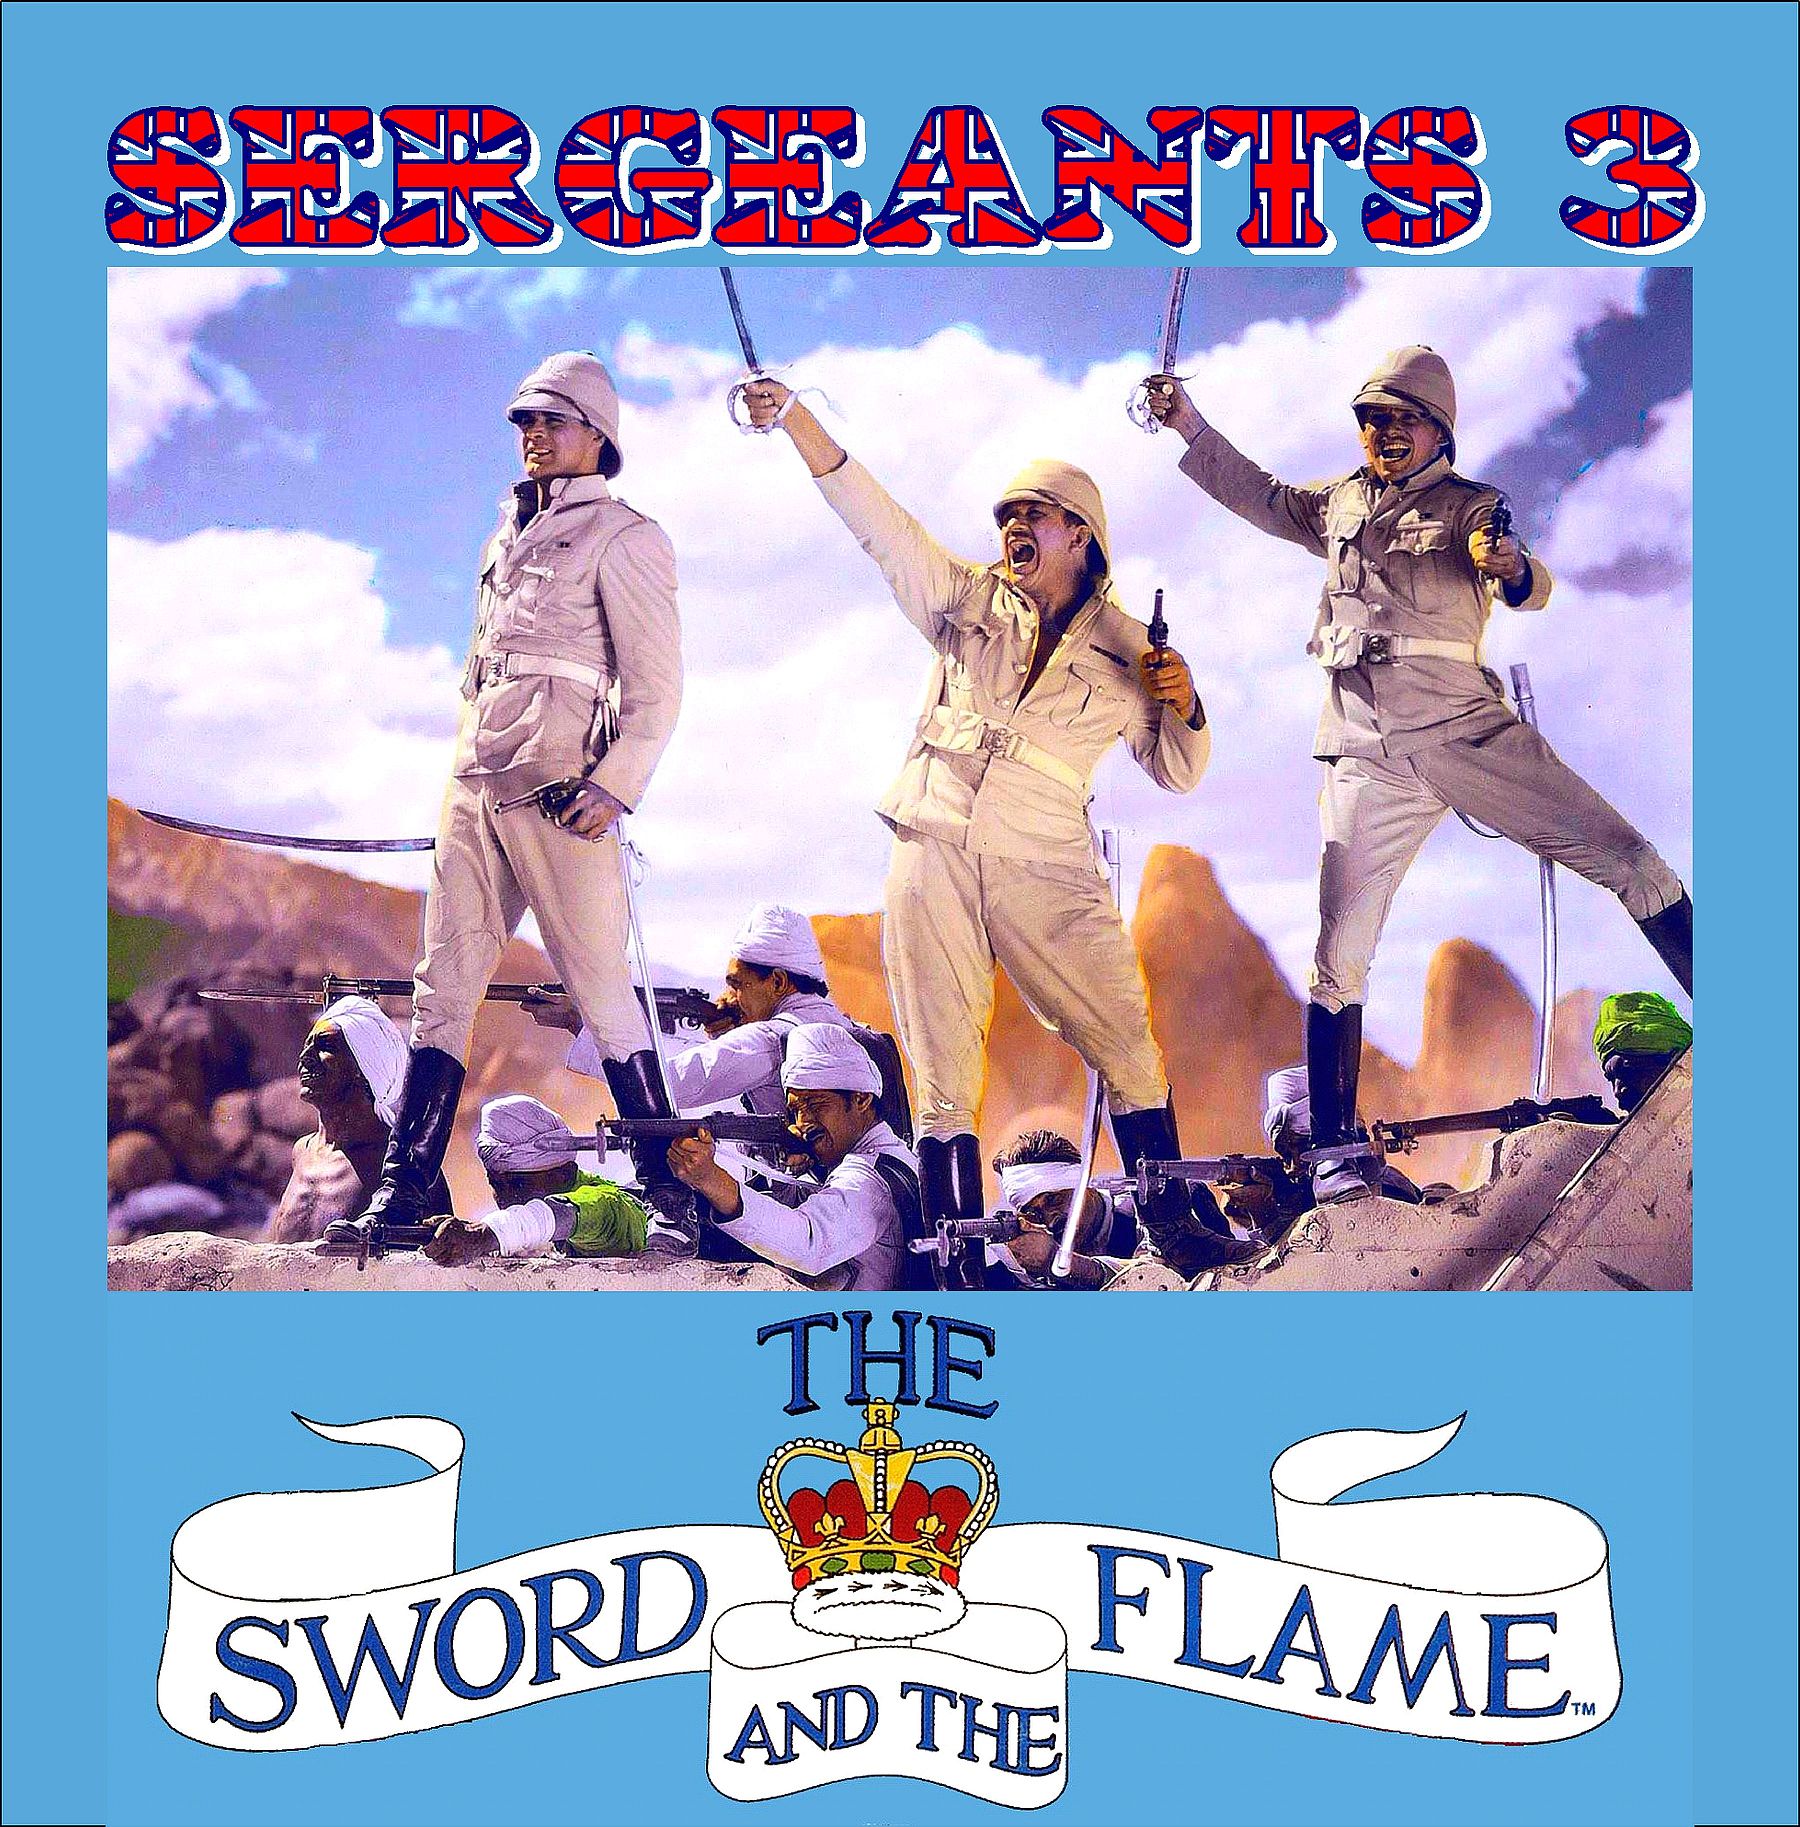 Sergeants 3